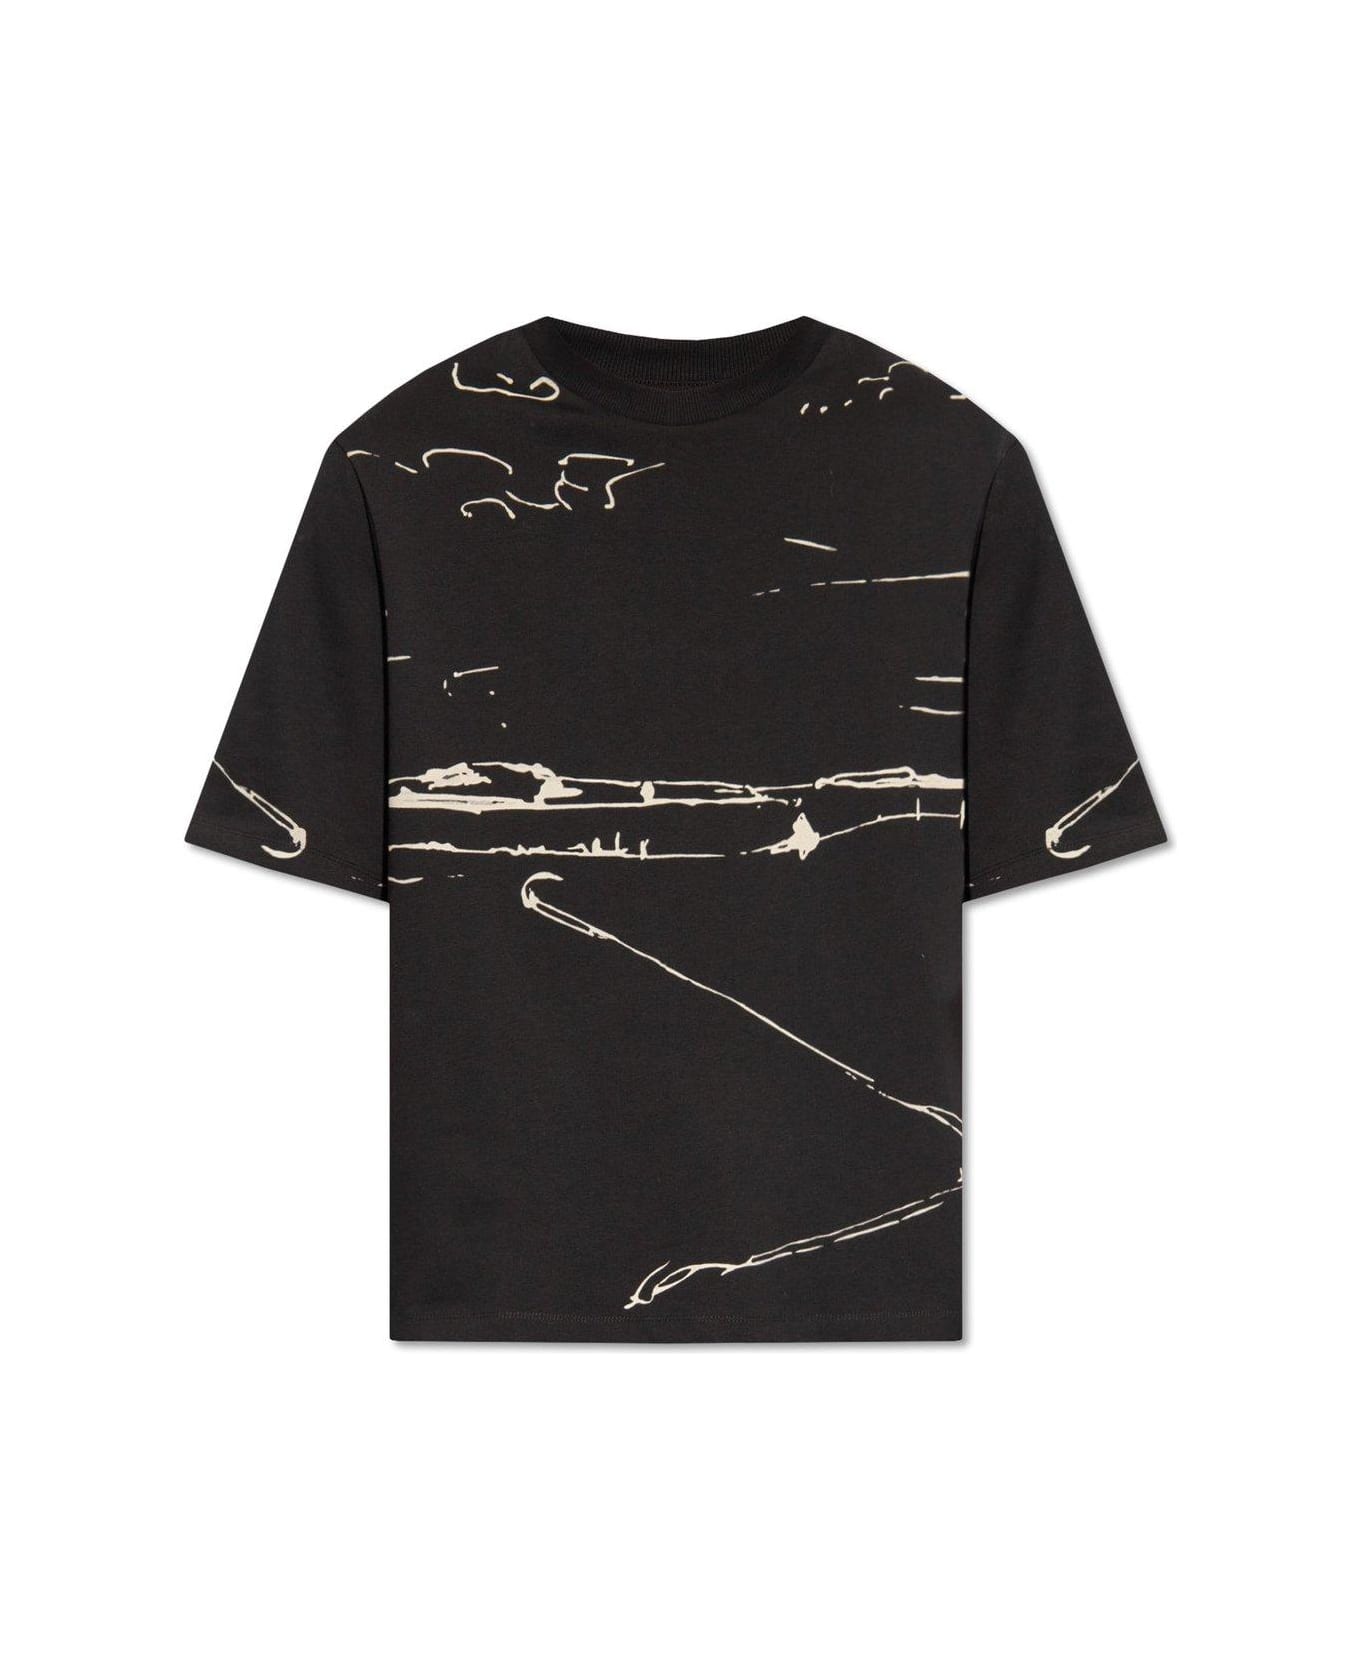 Emporio Armani Printed T-shirt - Black